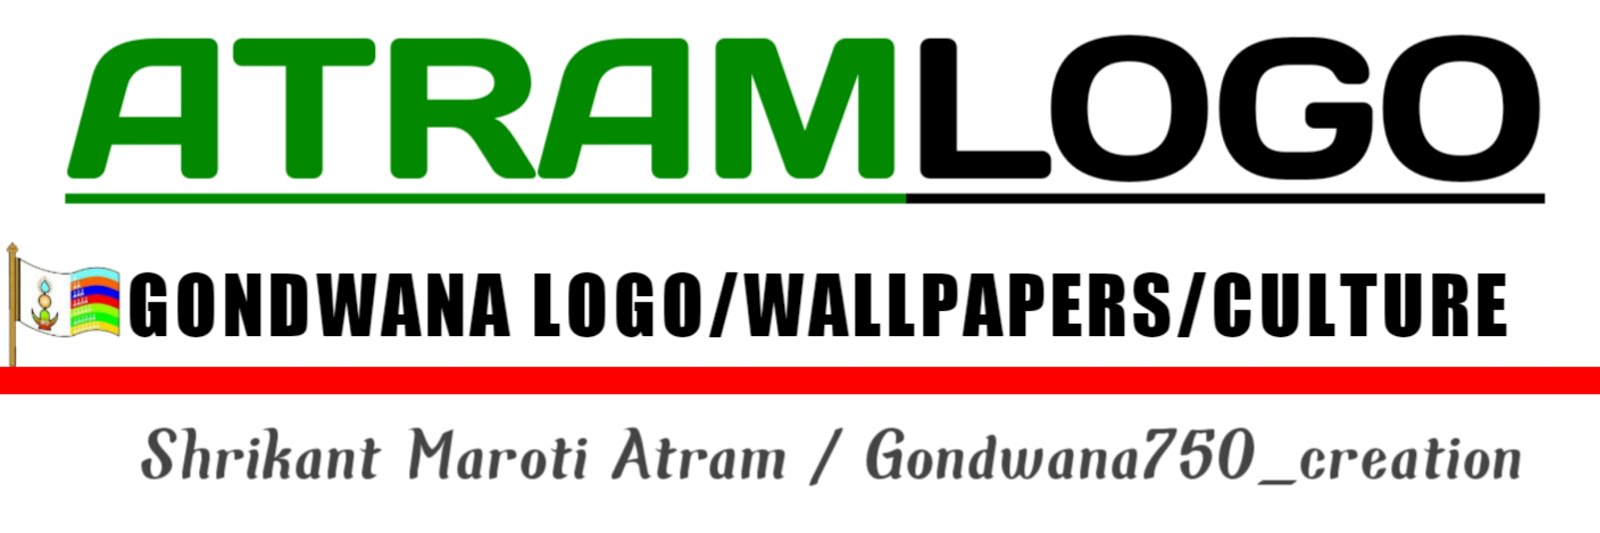 atram logos design free 